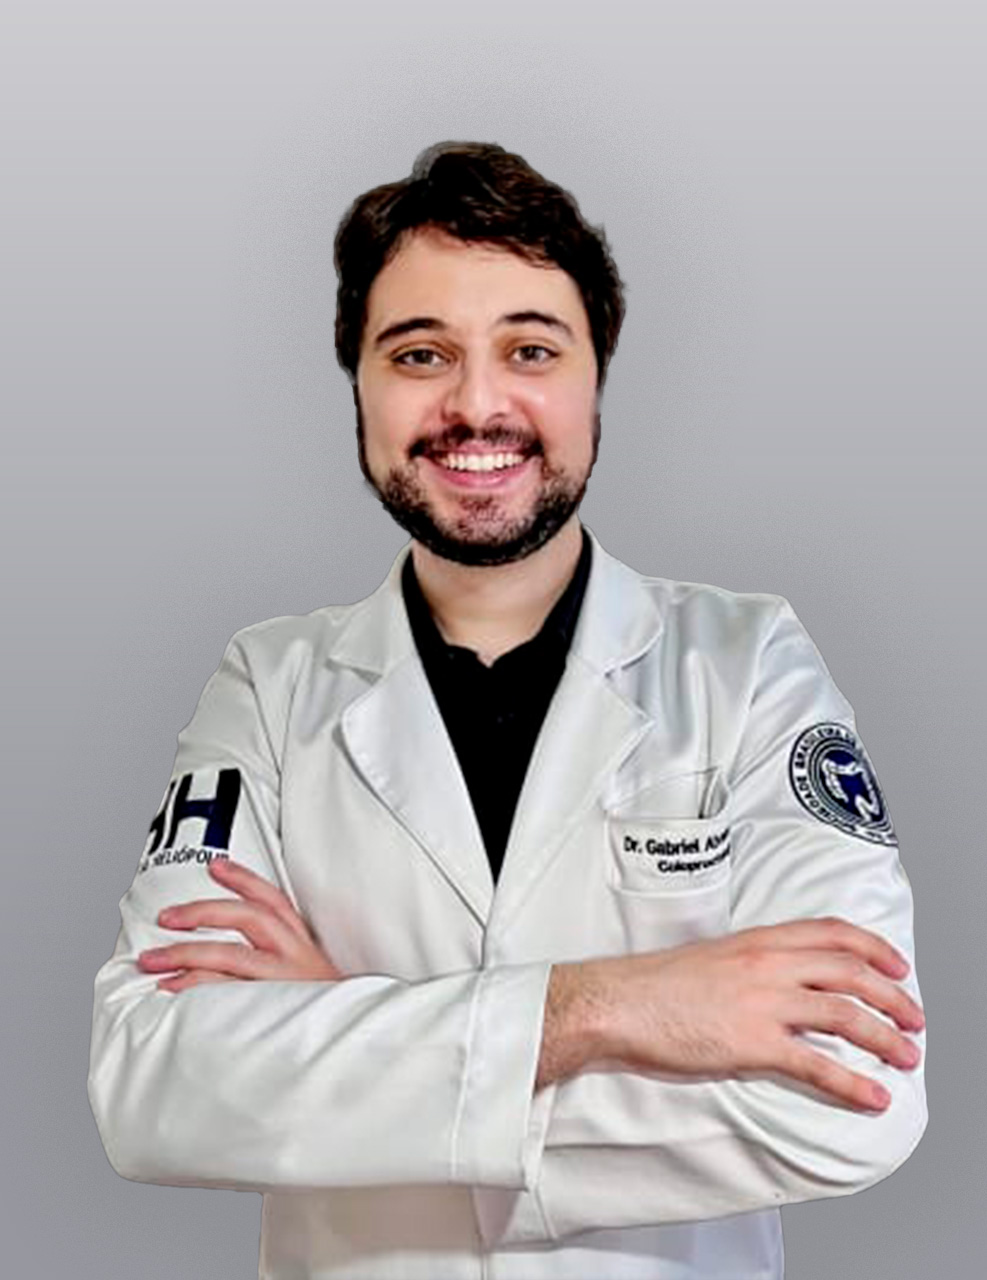 Dr. Gabriel Alves Carrião